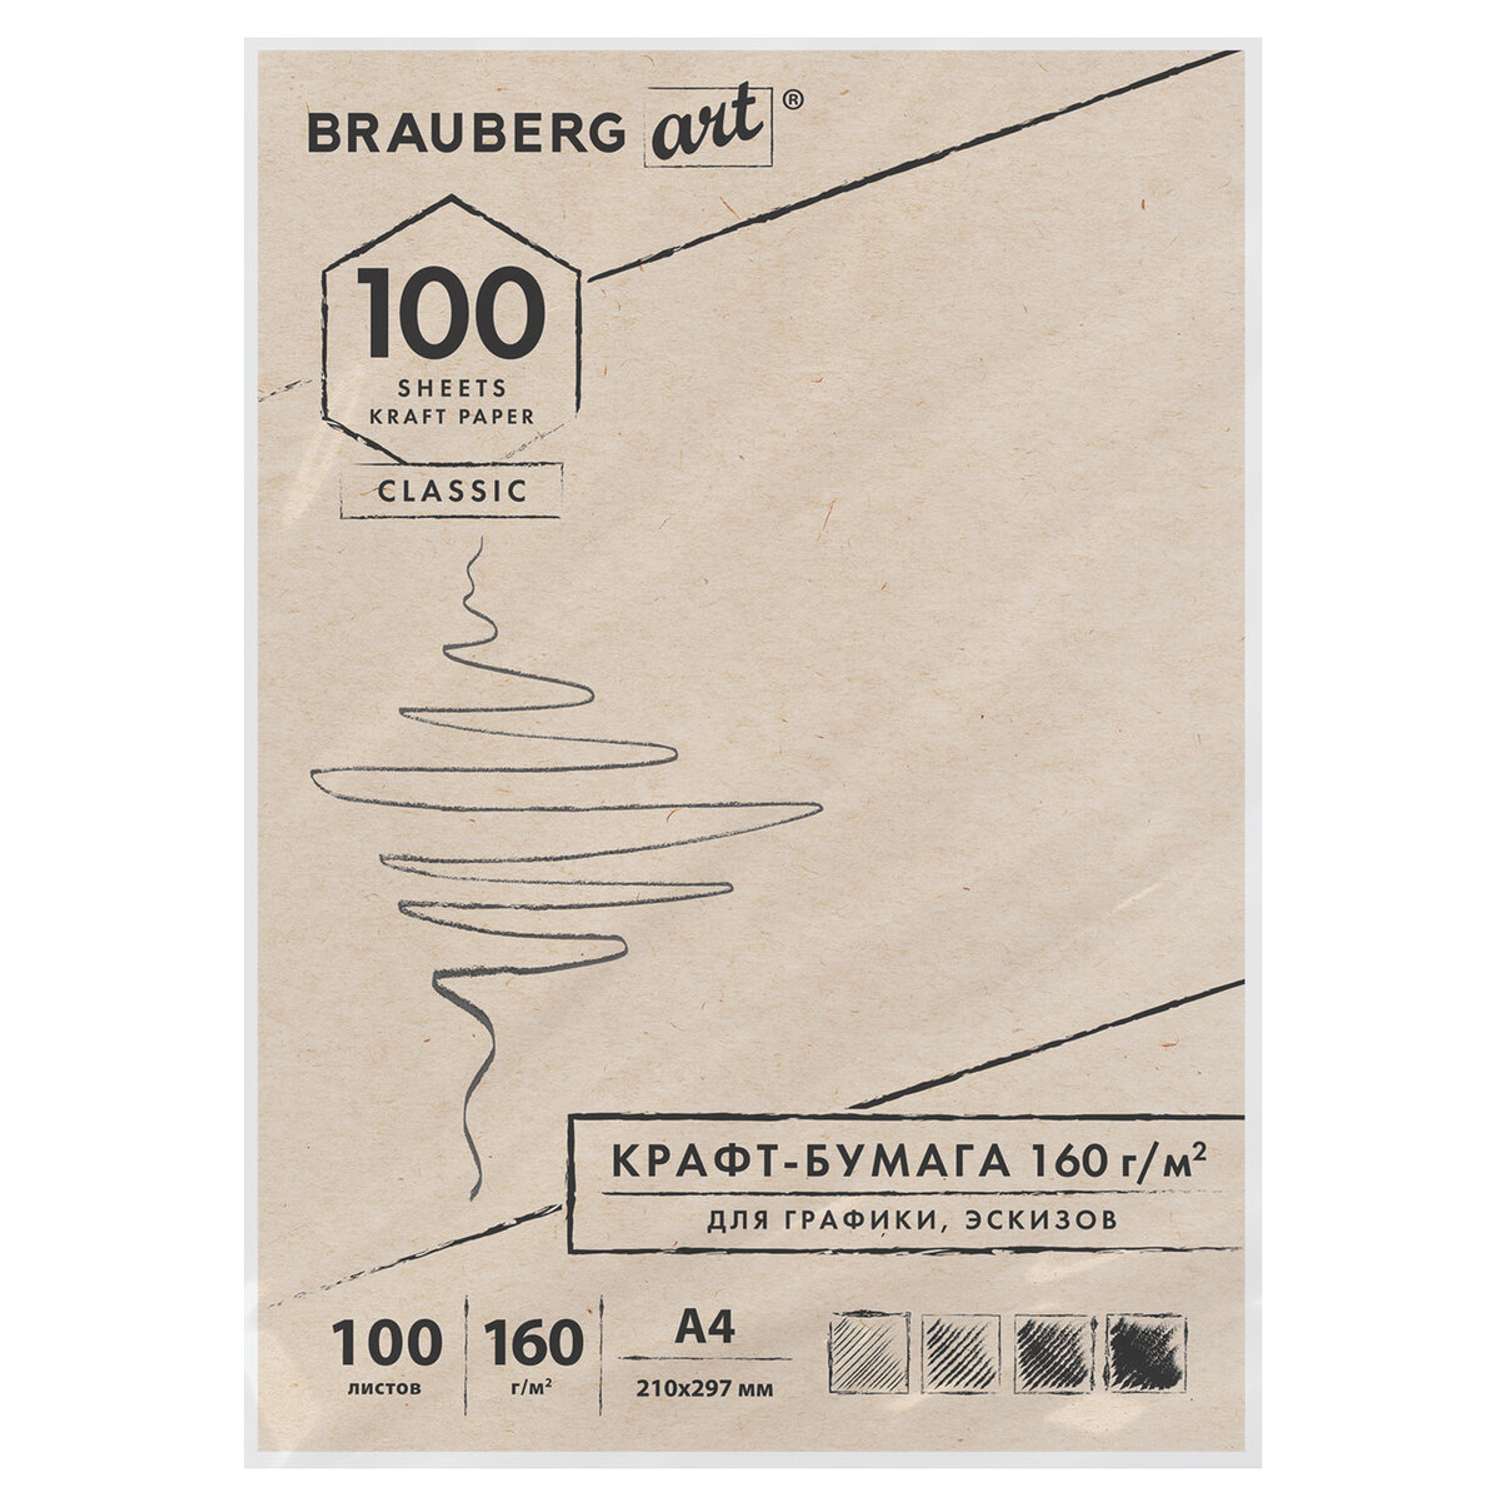 Крафт-бумага для графики Brauberg эскизов Art Classic А4 100л - фото 1